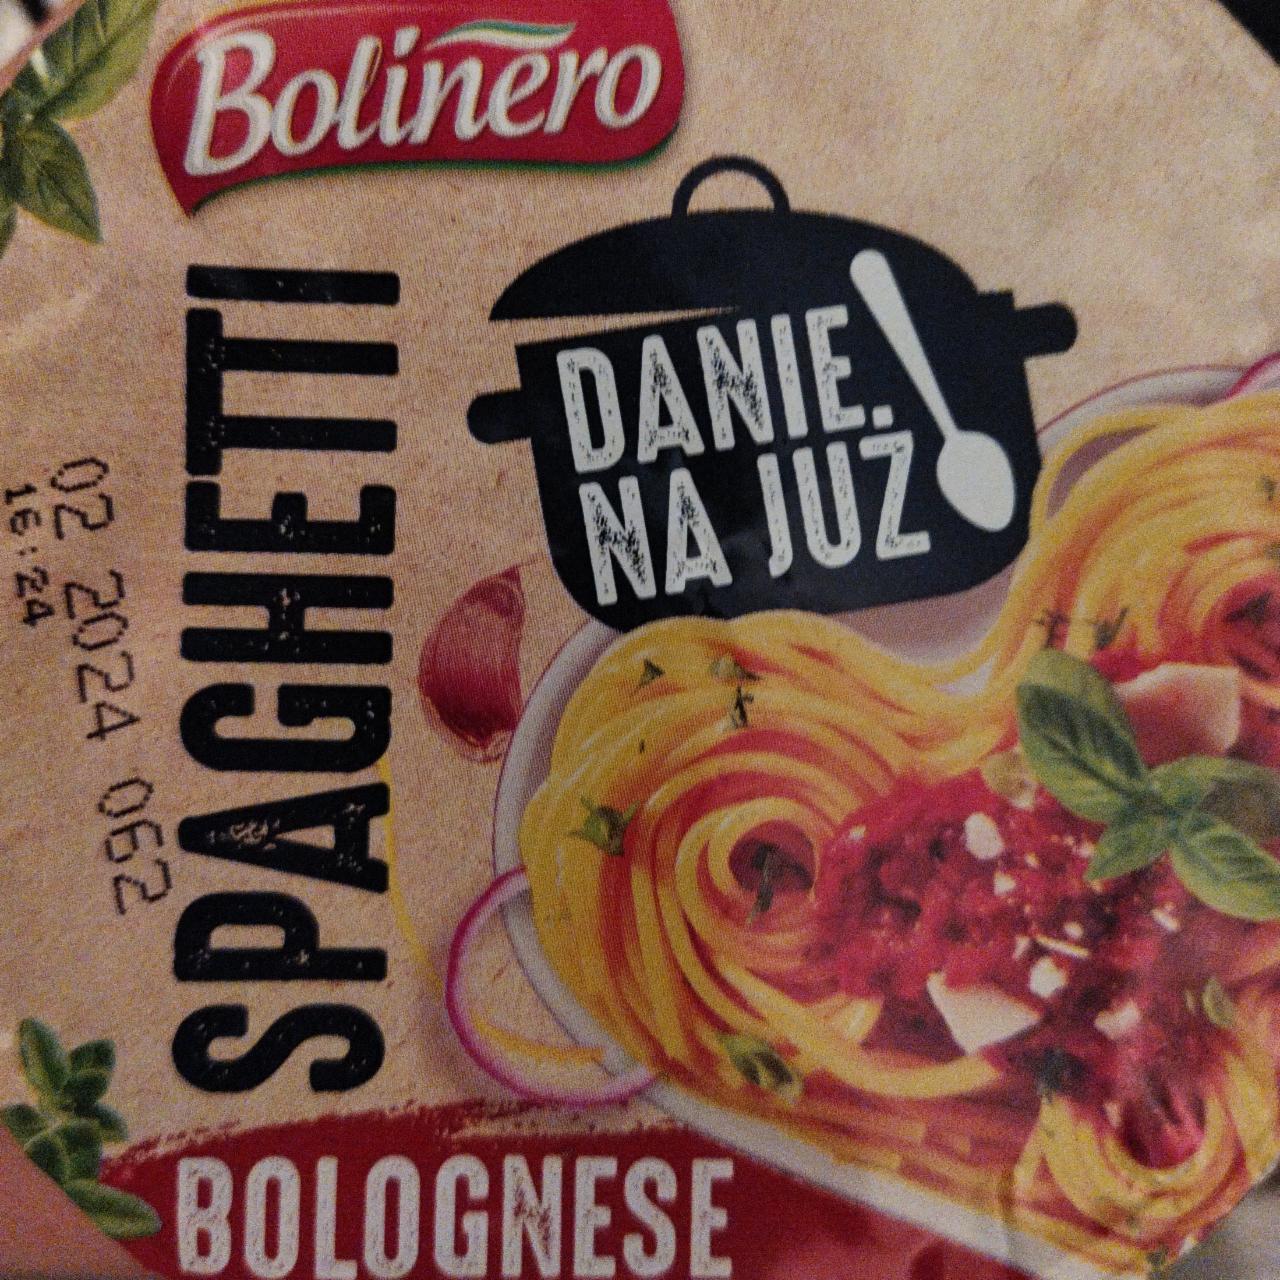 Fotografie - Spaghetti Bolognese Bolinero